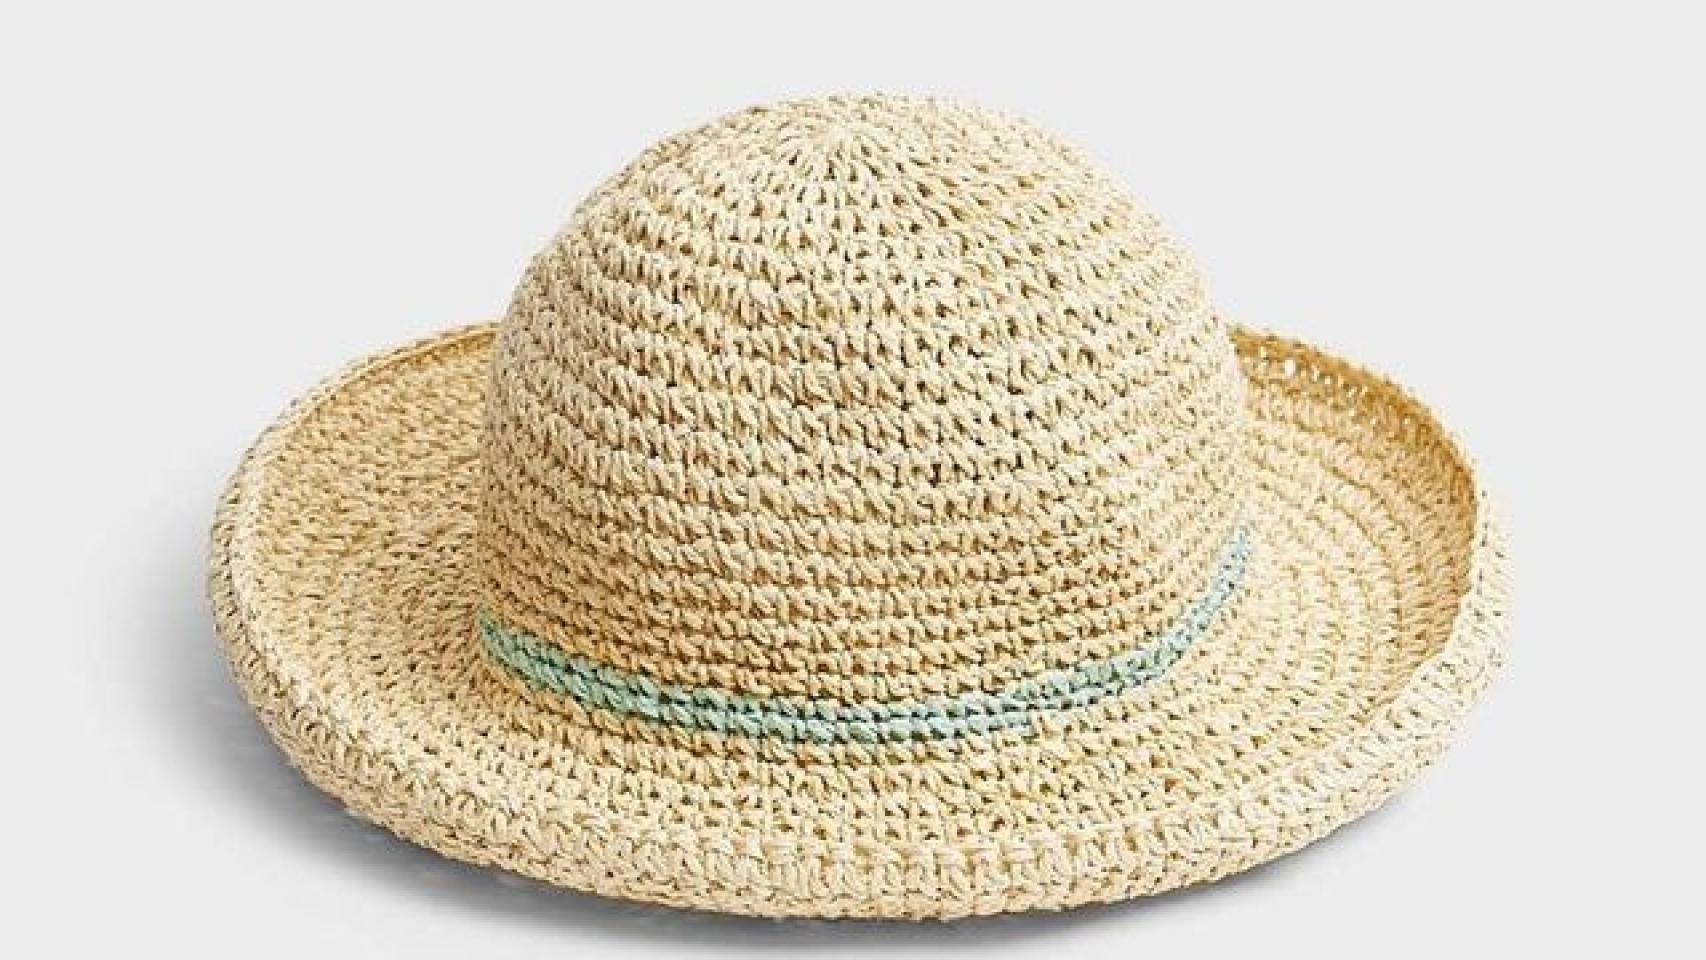 Diseños De Sombreros De Playa Para Mujer En 4 Ejemplos  Sombreros de  playa, Sombreros mujer, Sombreros con flor